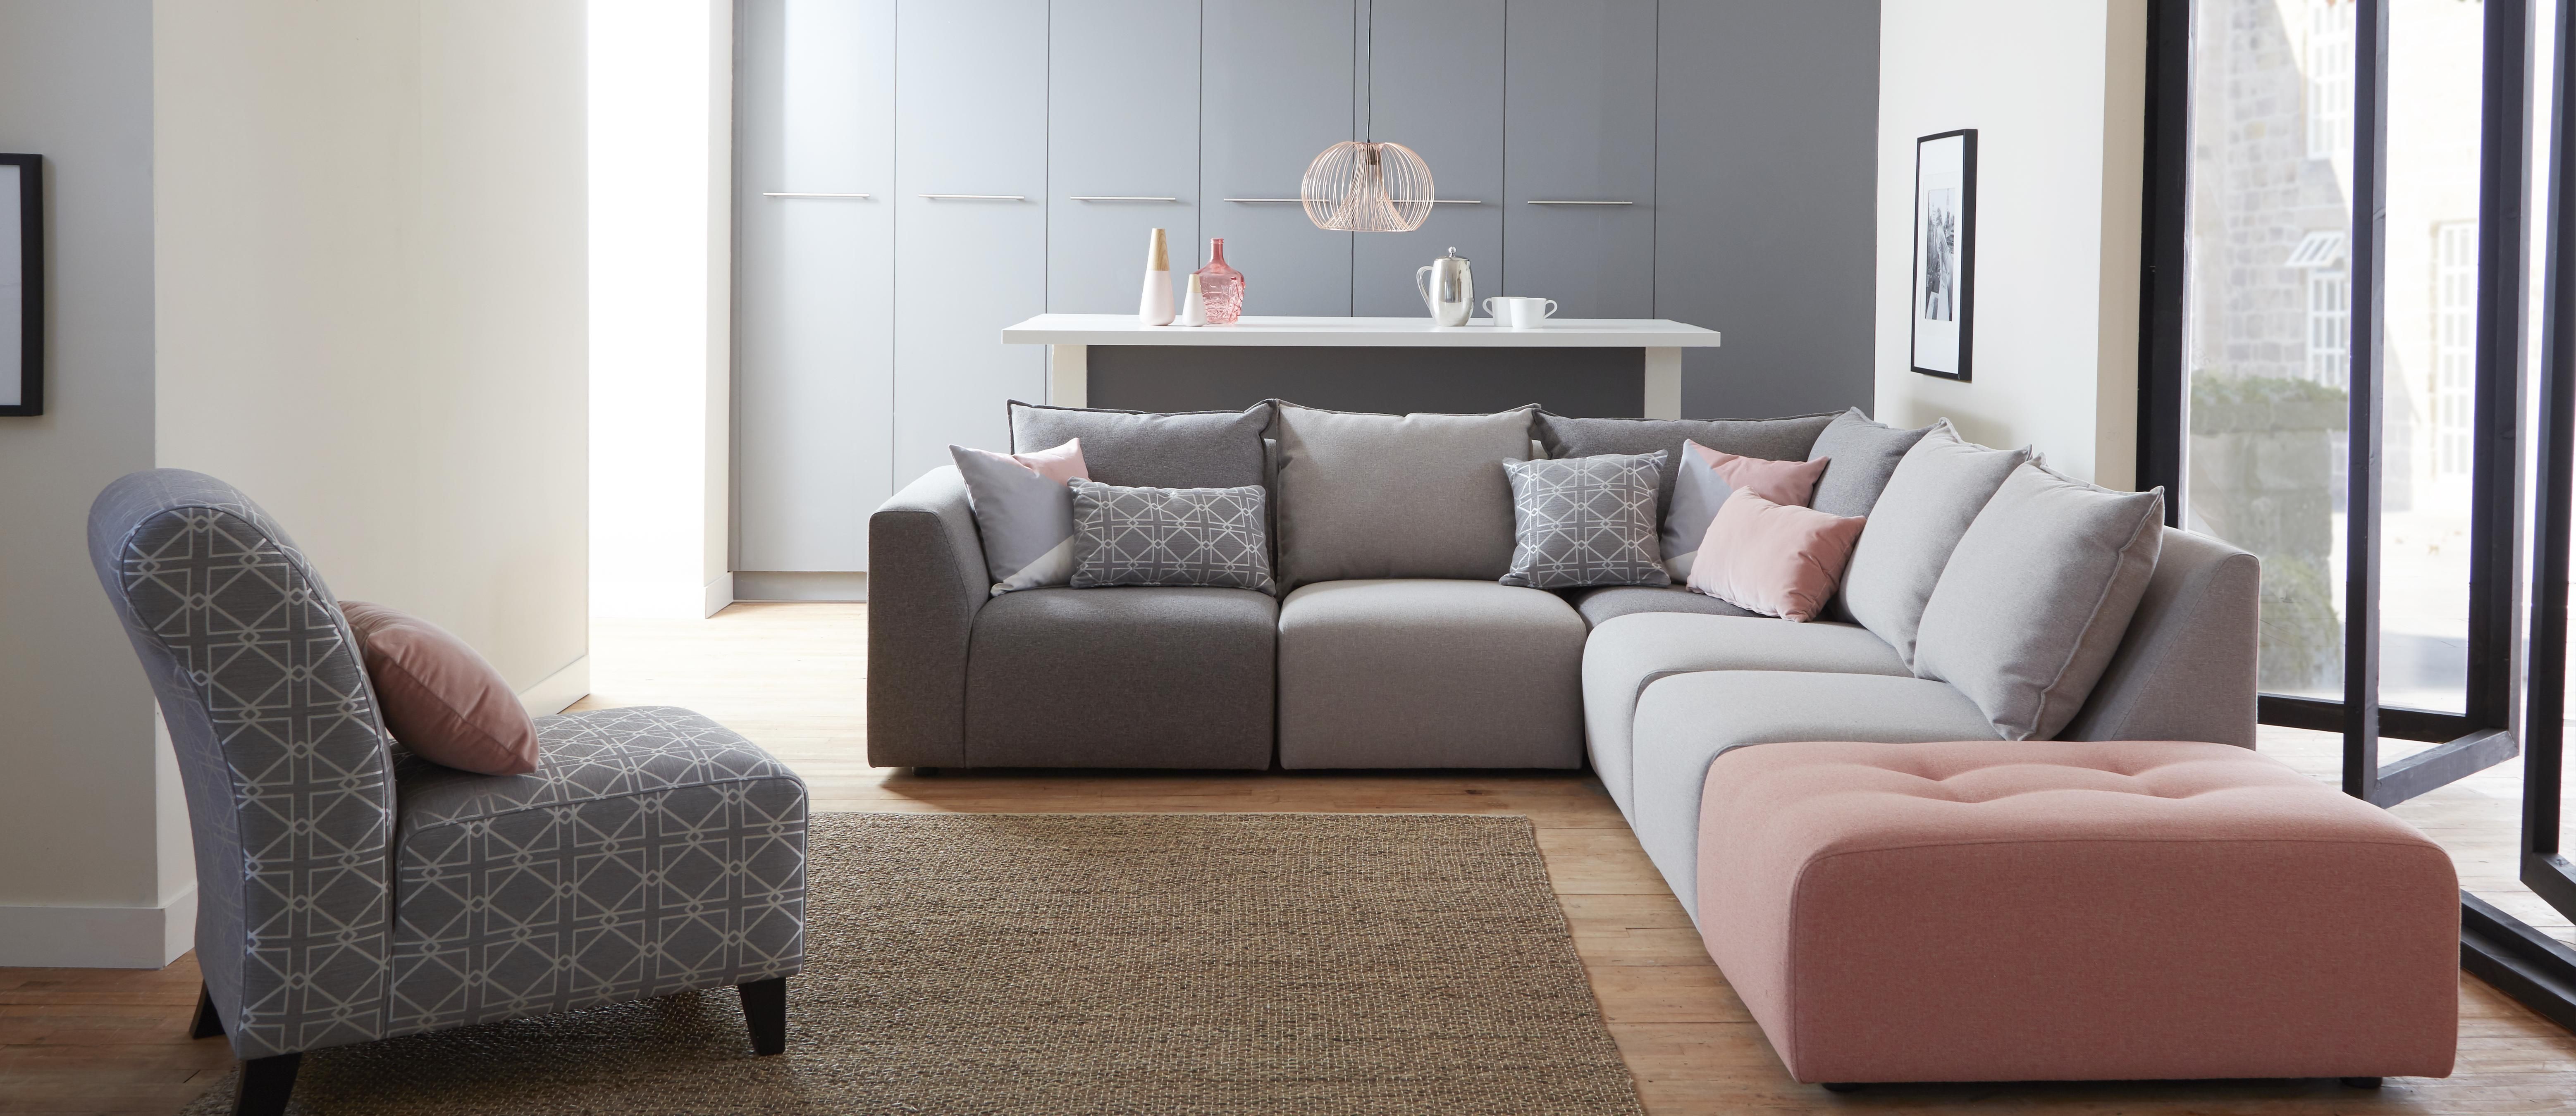 DFS Dusky range modular sofa | Modular sofa design, Modern ...